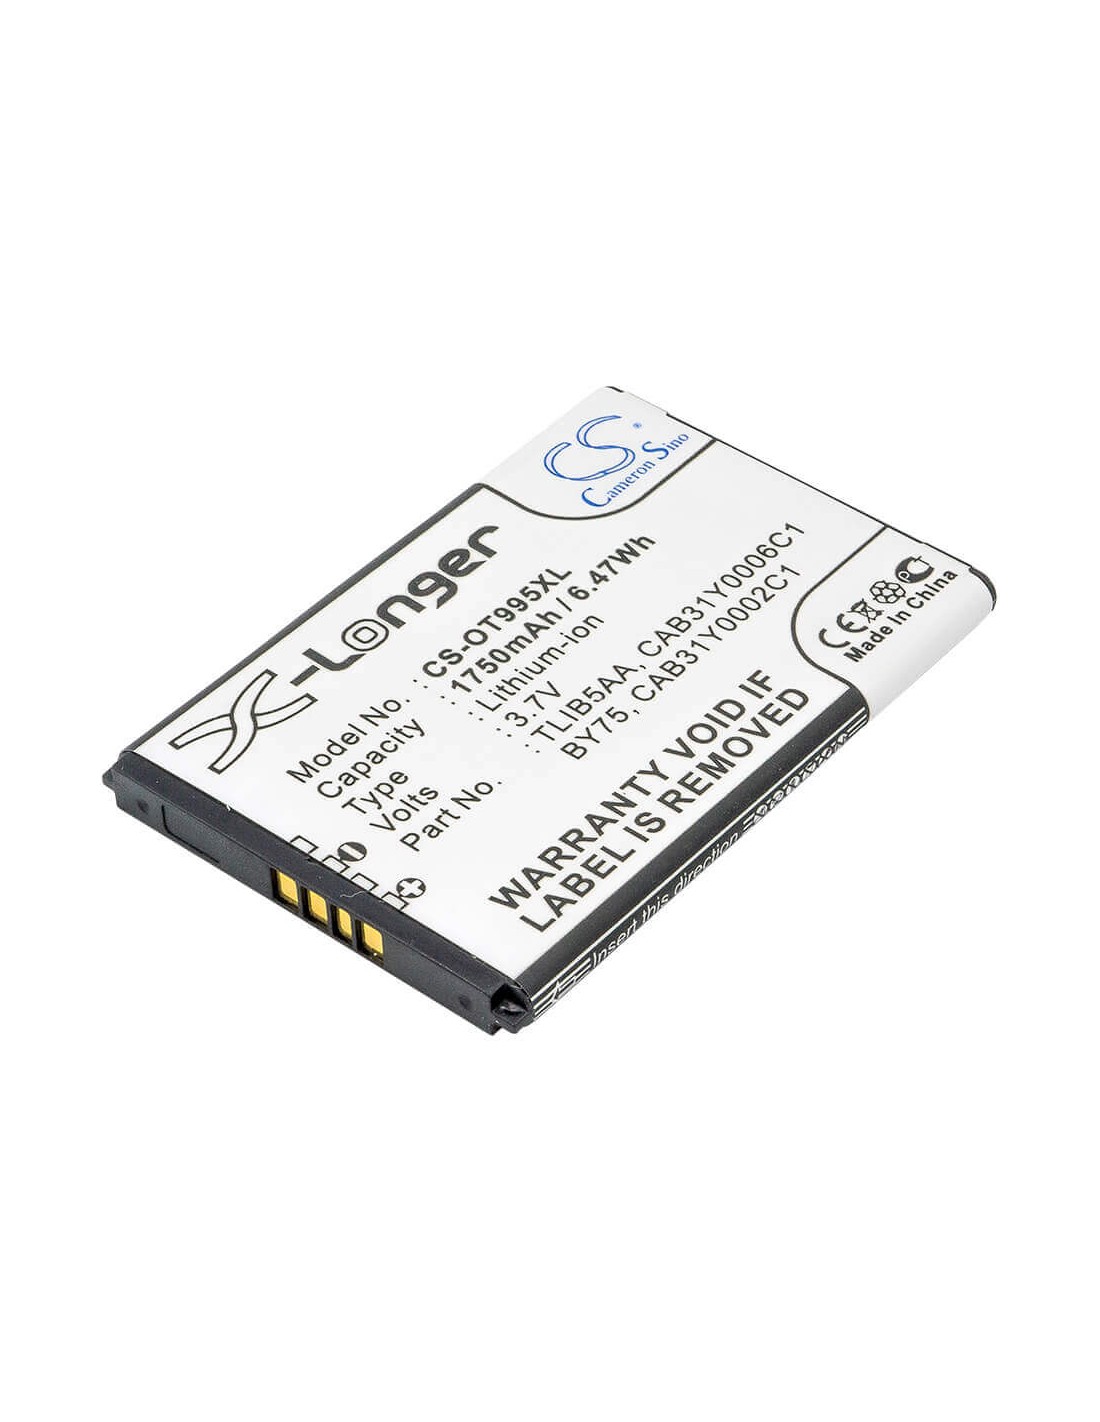 Battery for Alcatel OT-995, OT-995 Ultra, One Touch 995 3.7V, 1750mAh - 6.48Wh